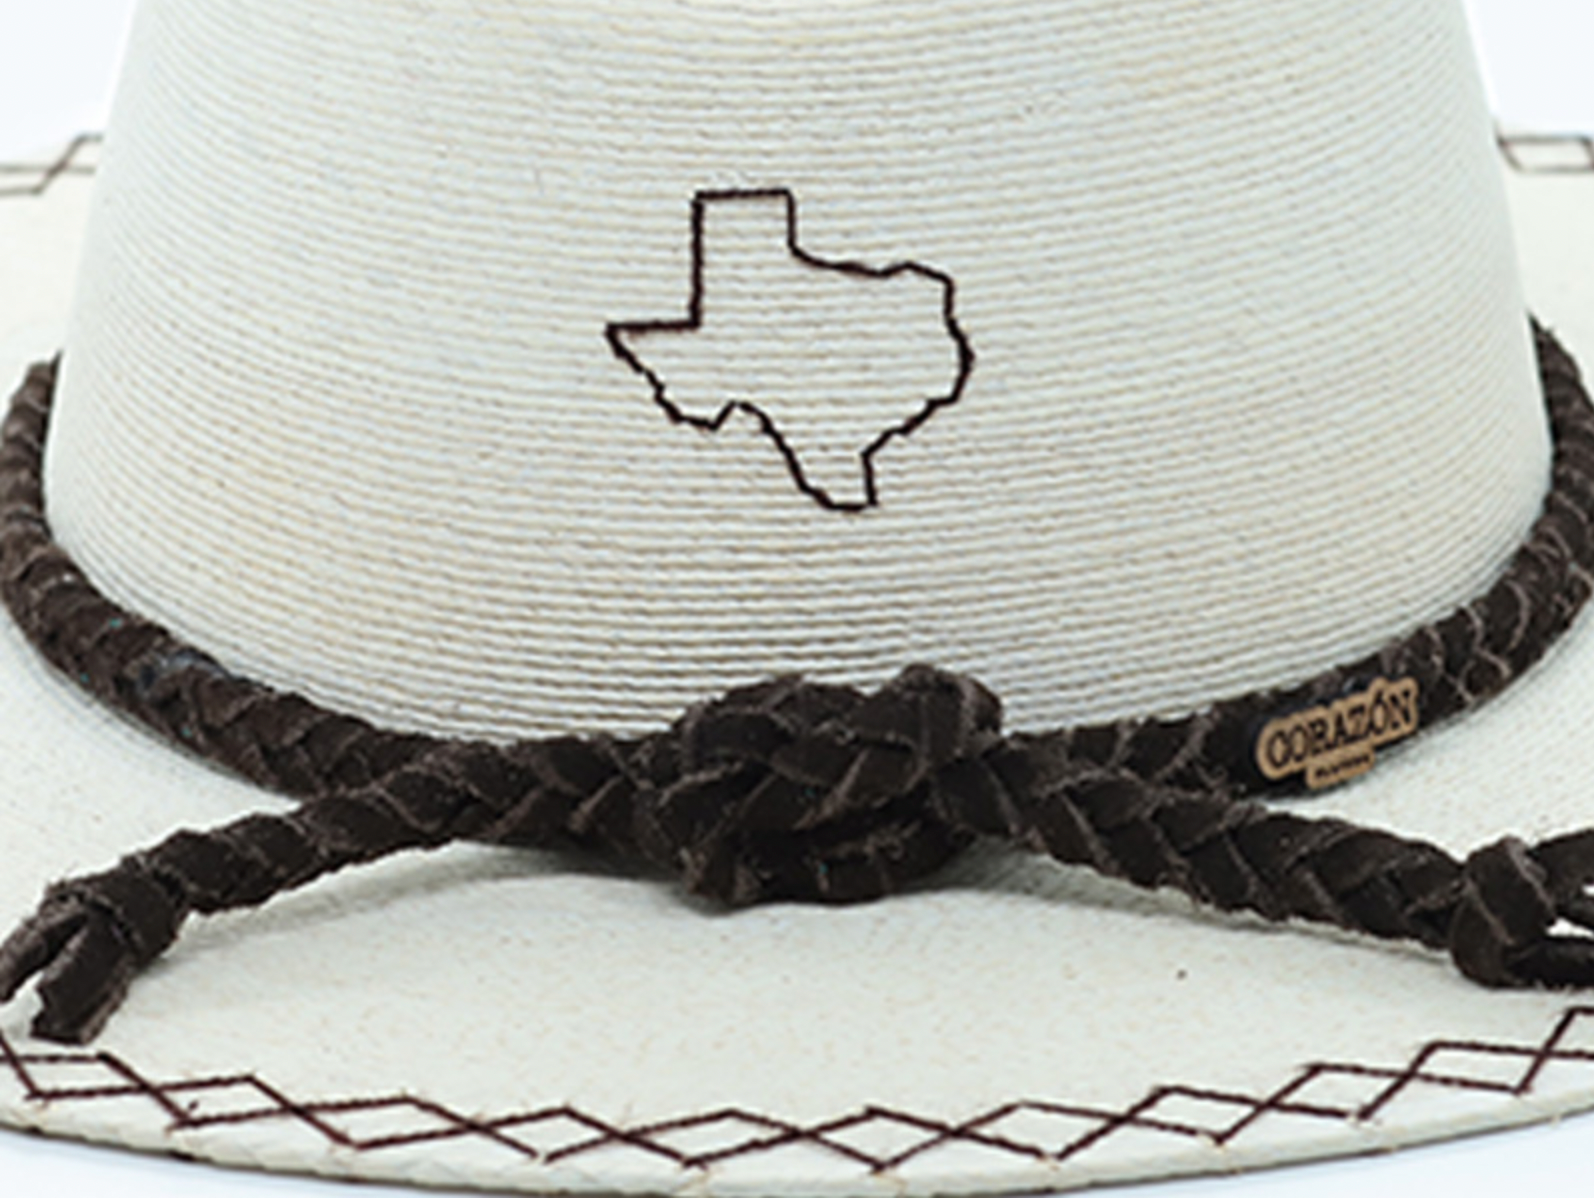 Exclusive Texan La Palma Hat by Corazon Playero